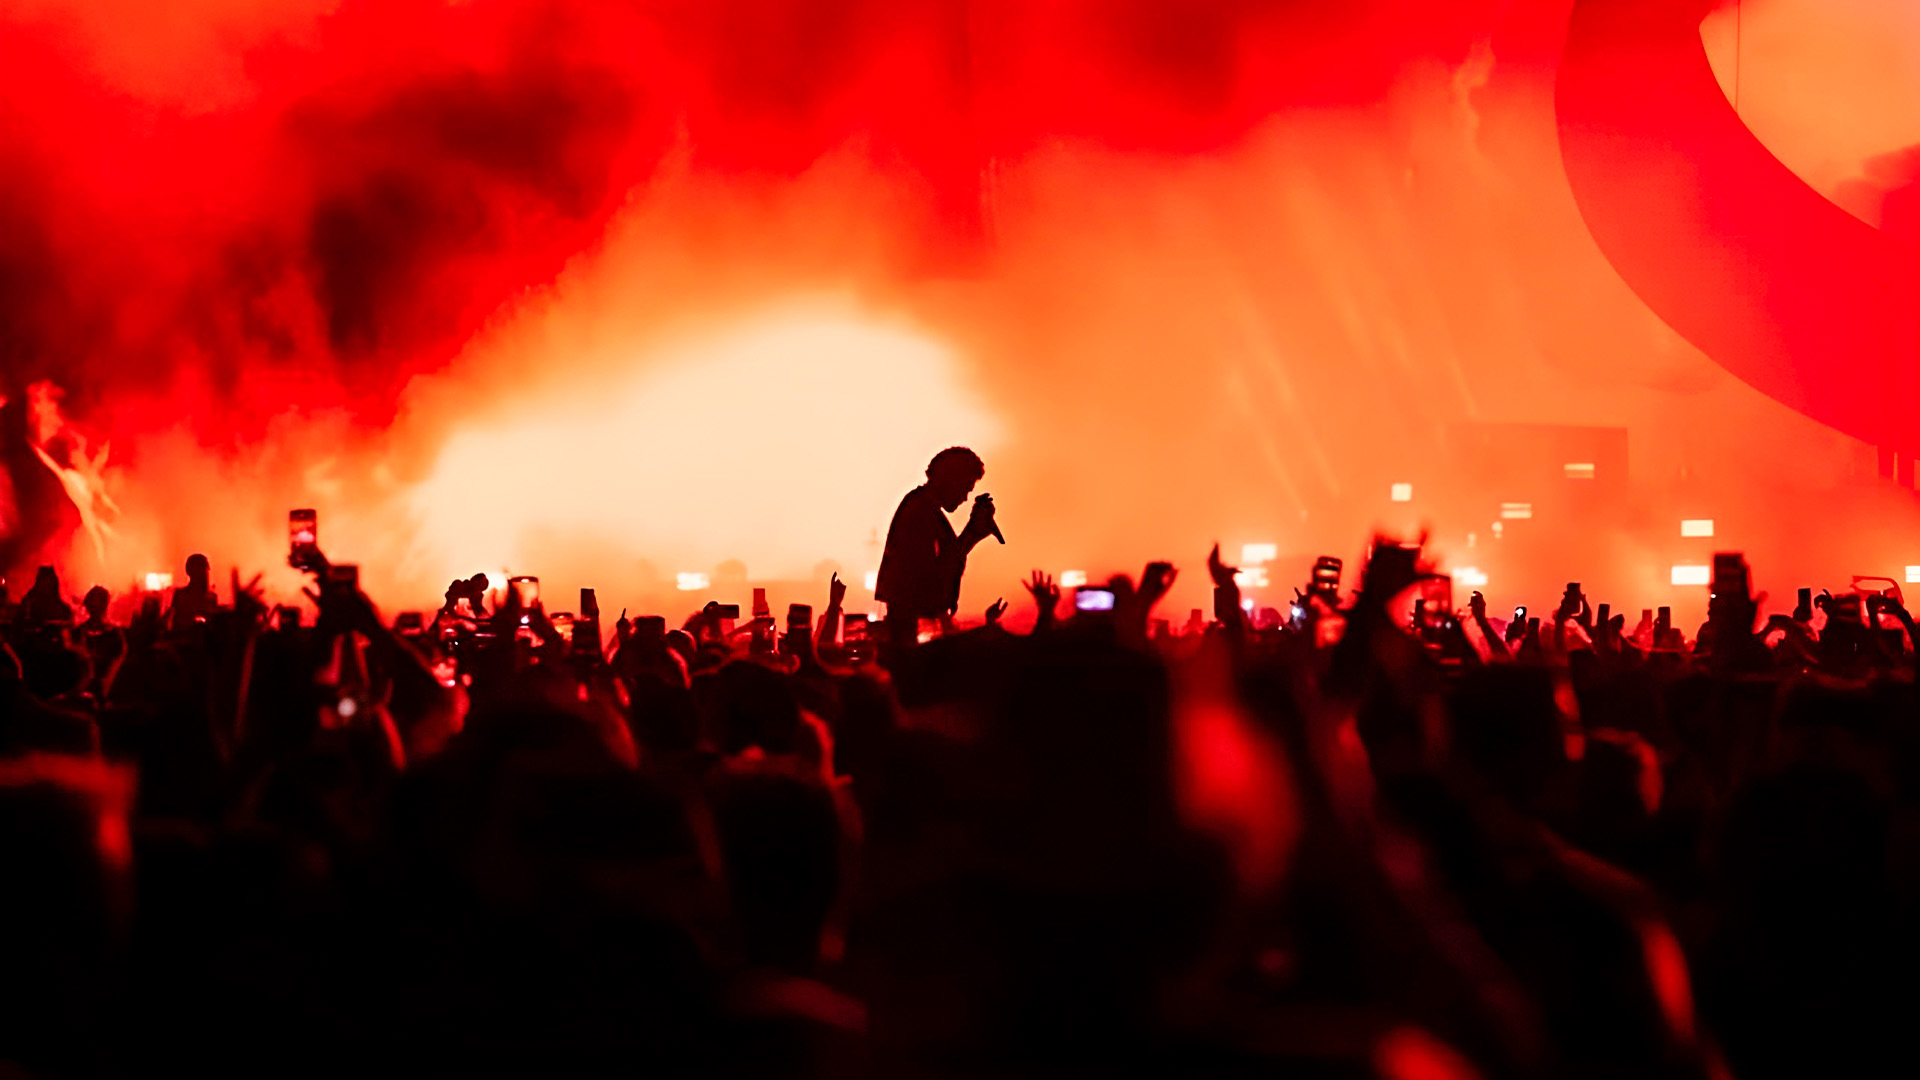 Confirmado! The Weeknd anunció concierto en Colombia